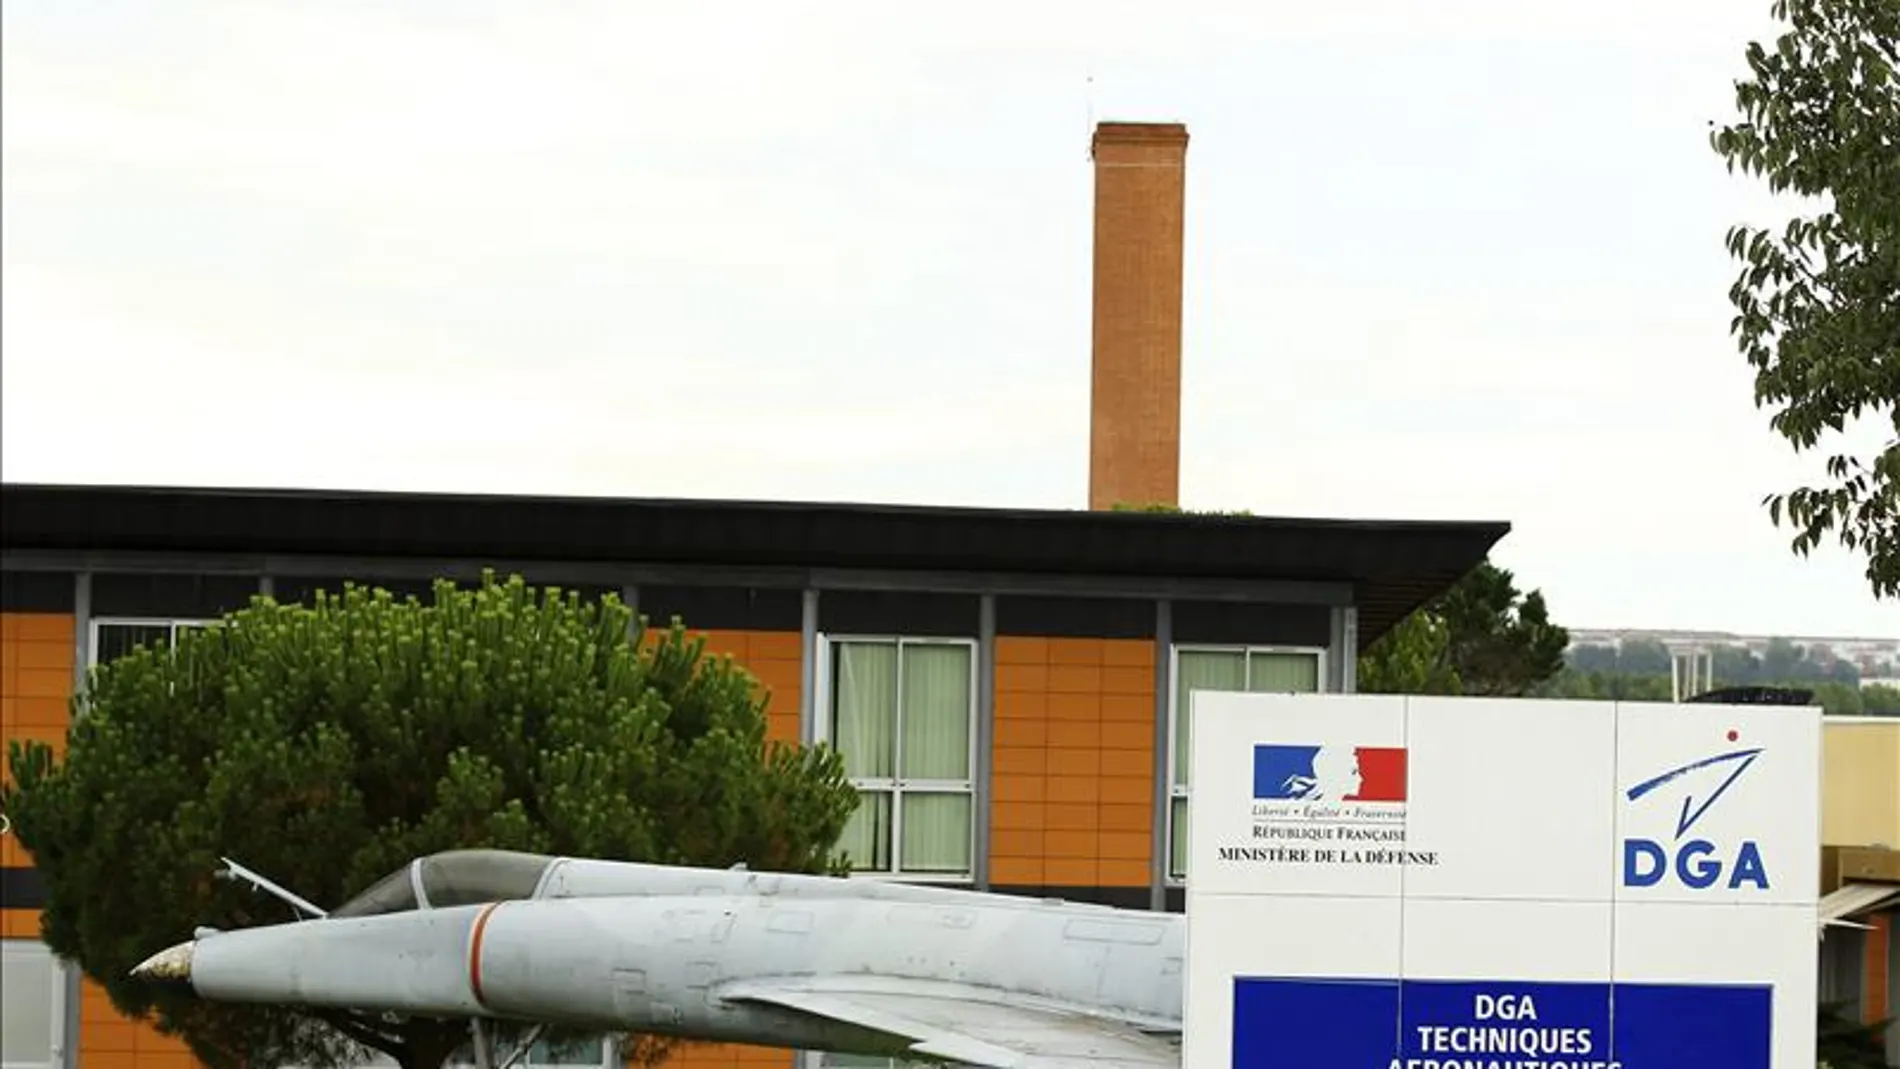 Vista del centro de la Dirección General de la Aviación Civil francesa (DGAC) en Balma, Francia